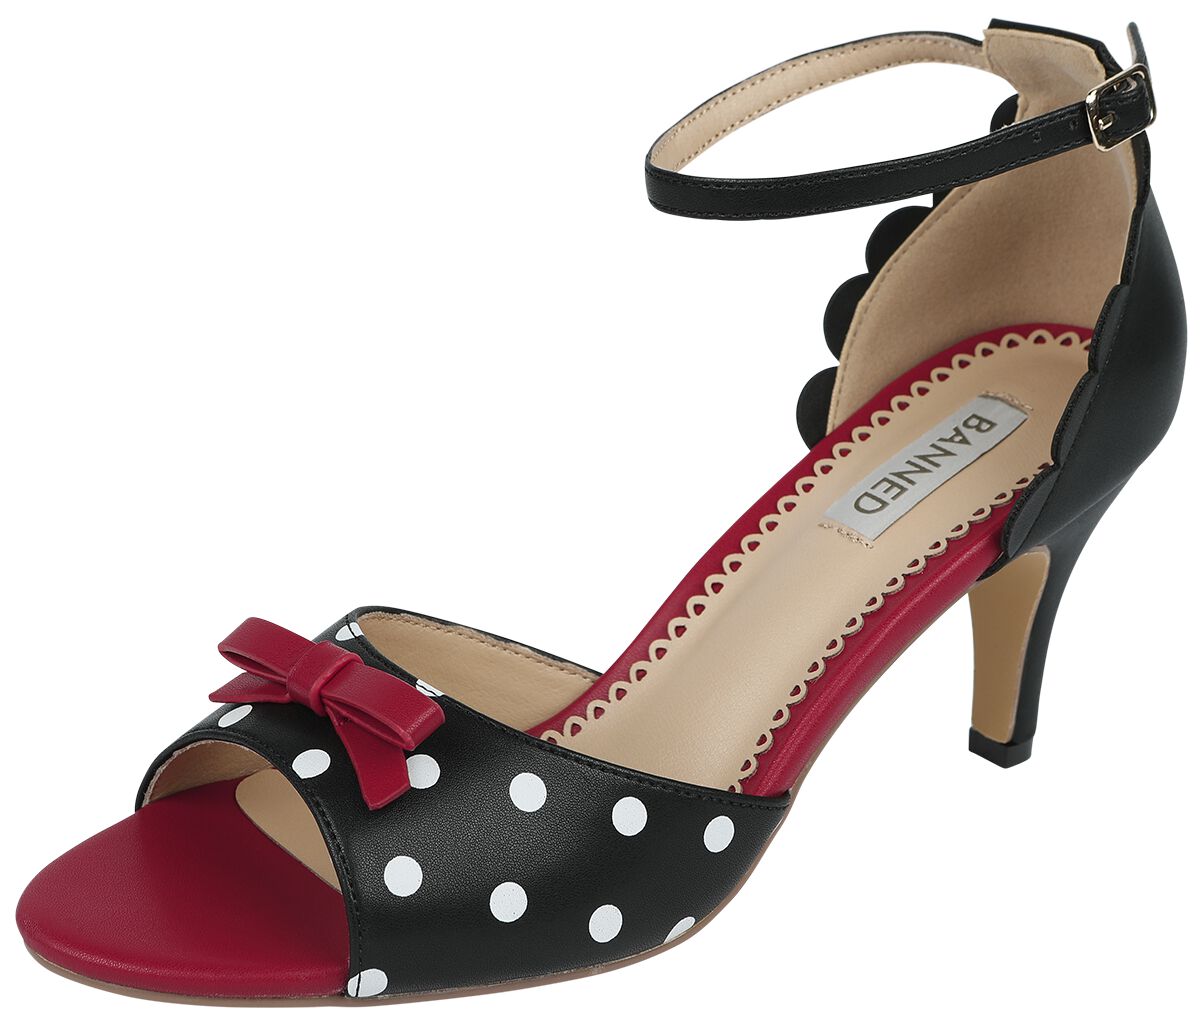 Banned Retro - Rockabilly High Heel - Poppy Polka Open Toe Sandals - EU36 bis EU41 - für Damen - Größe EU41 - schwarz/rot